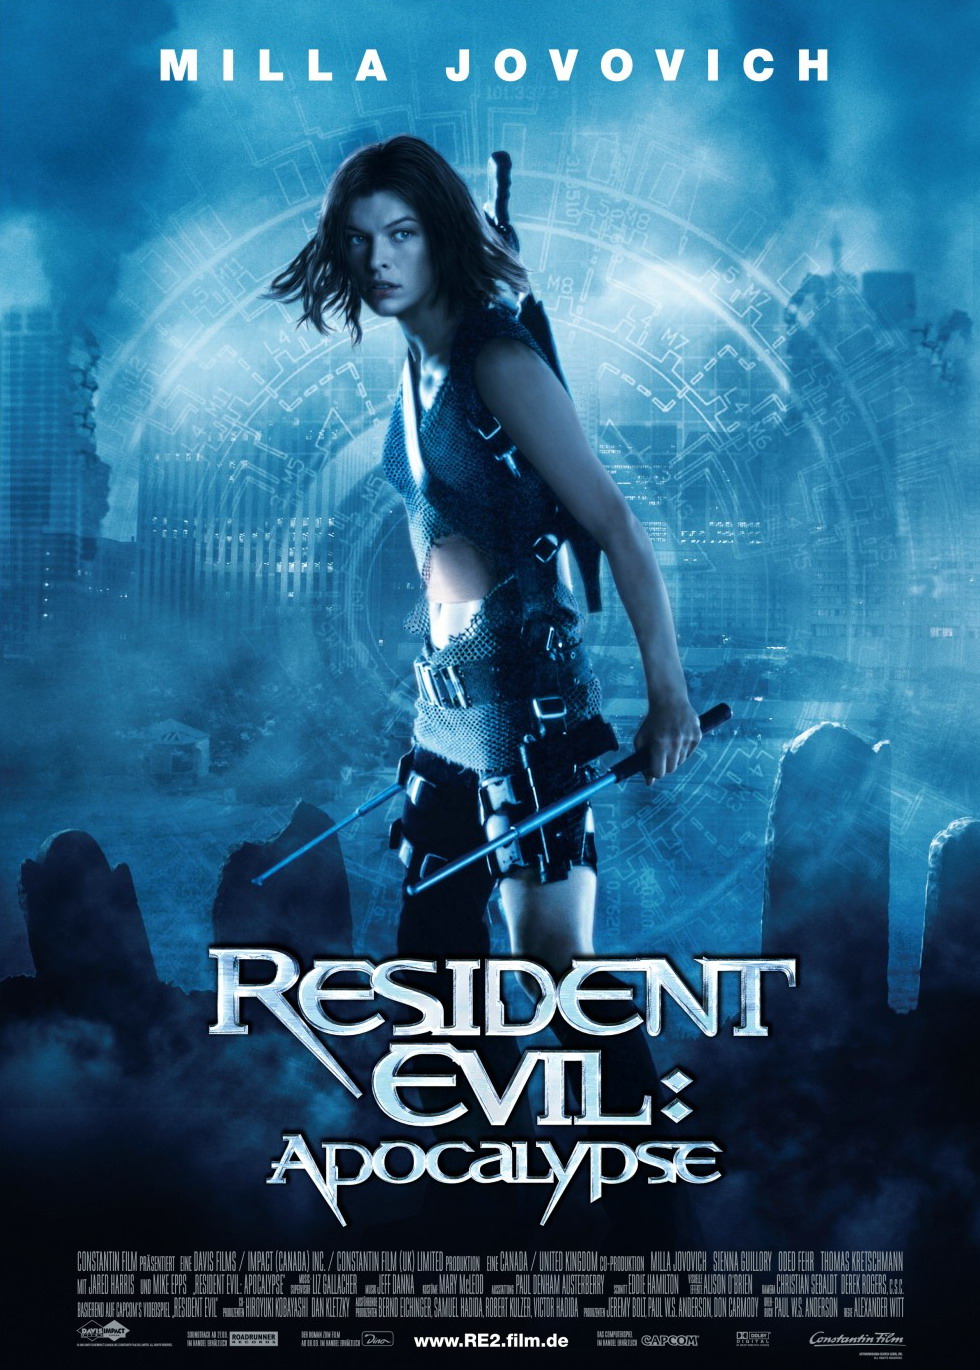 Resident Evil: Apocalypse 2004 - Full (HD)